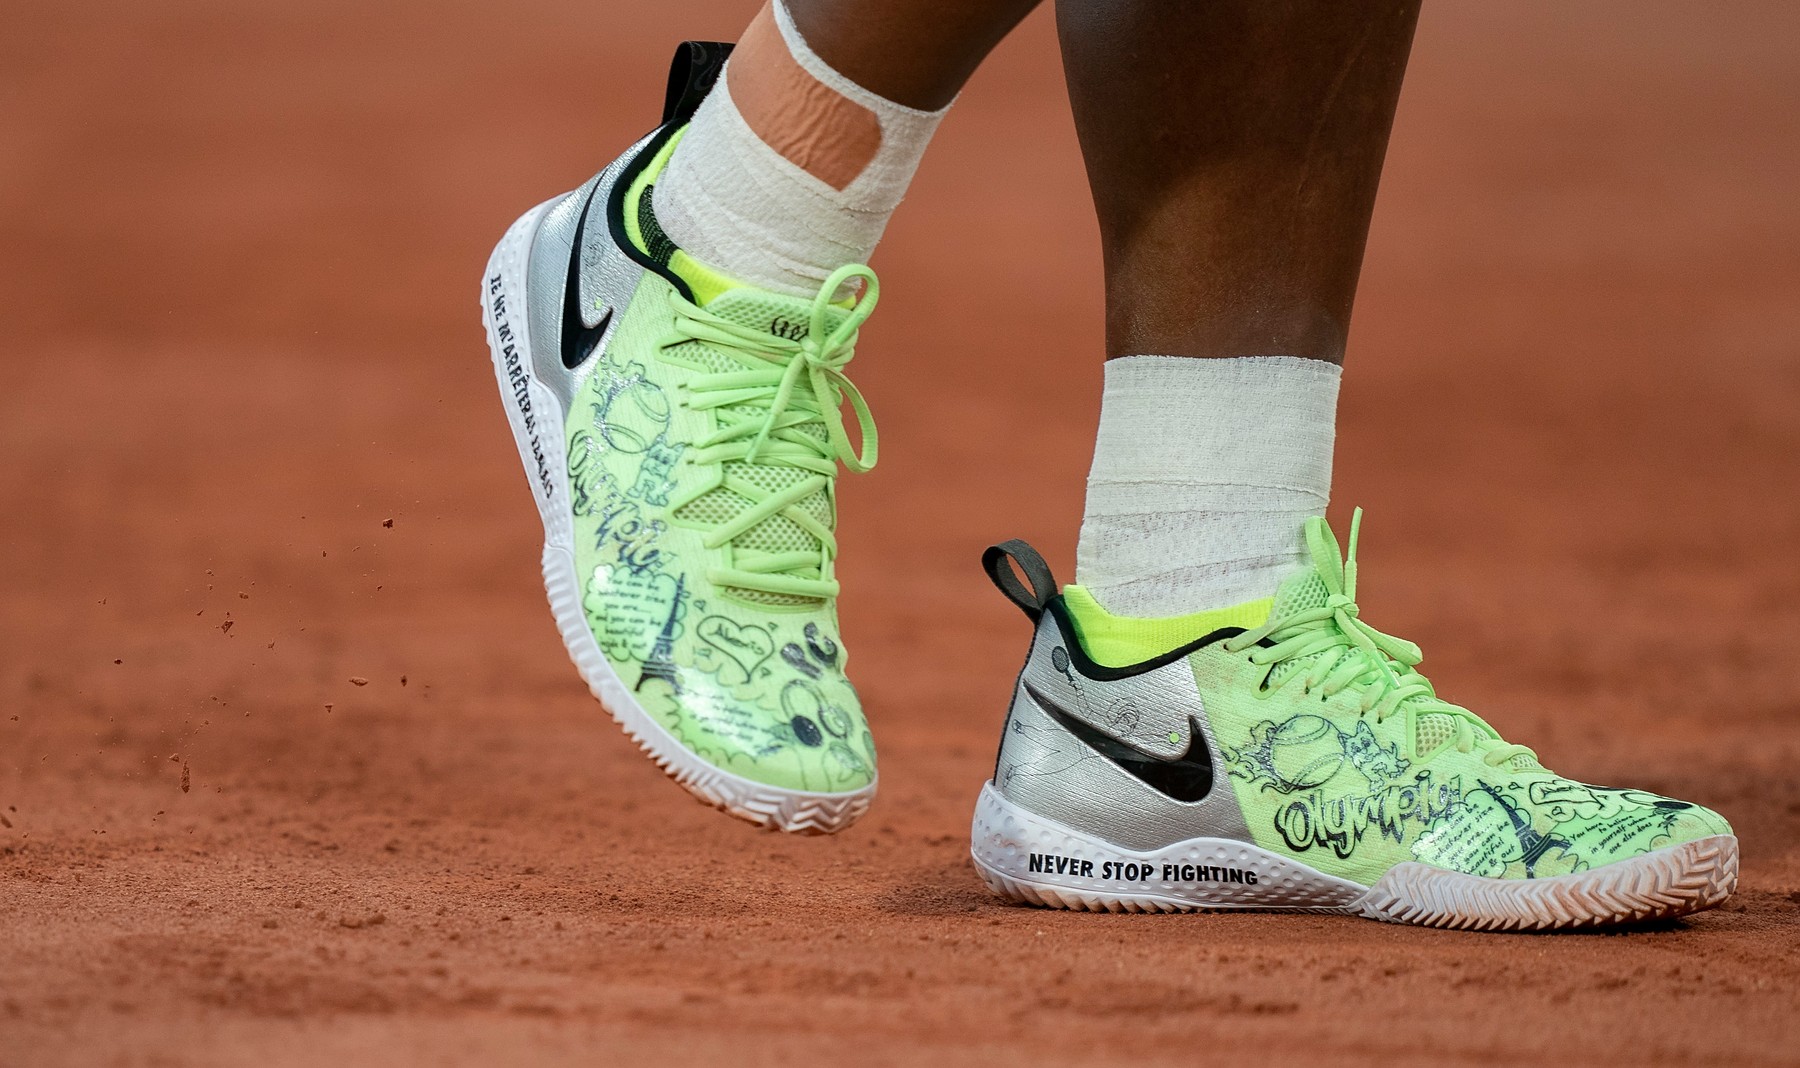 Care e, de fapt, istoria pantofilor sport purtați de Serena Williams la Roland Garros. Mărturisirea americancei